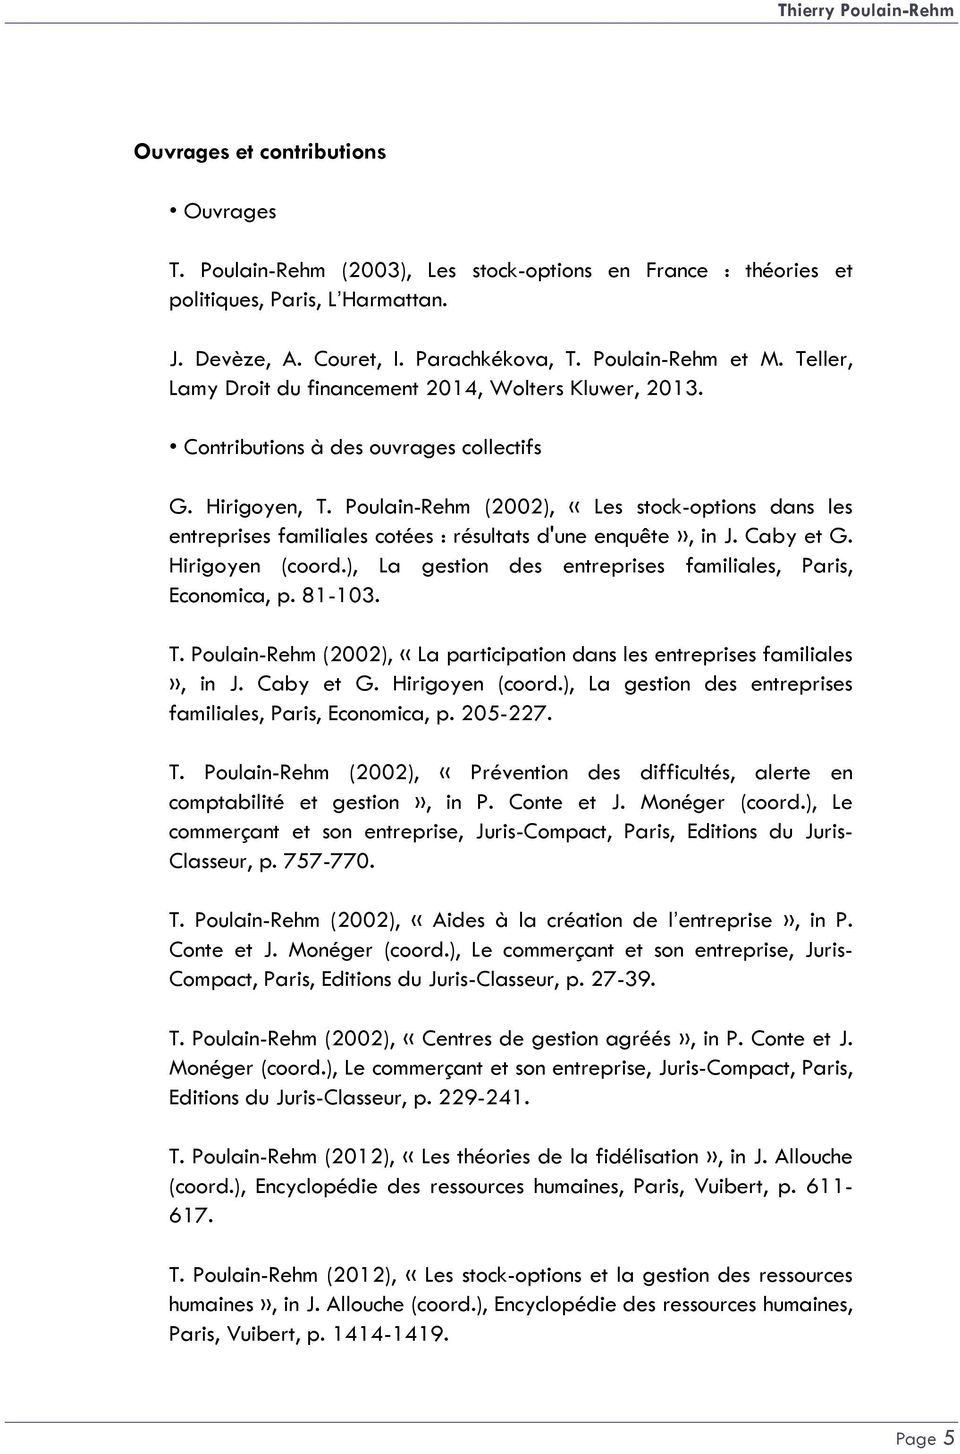 Poulain-Rehm (2002), «Les stock-options dans les entreprises familiales cotées : résultats d'une enquête», in J. Caby et G. Hirigoyen (coord.